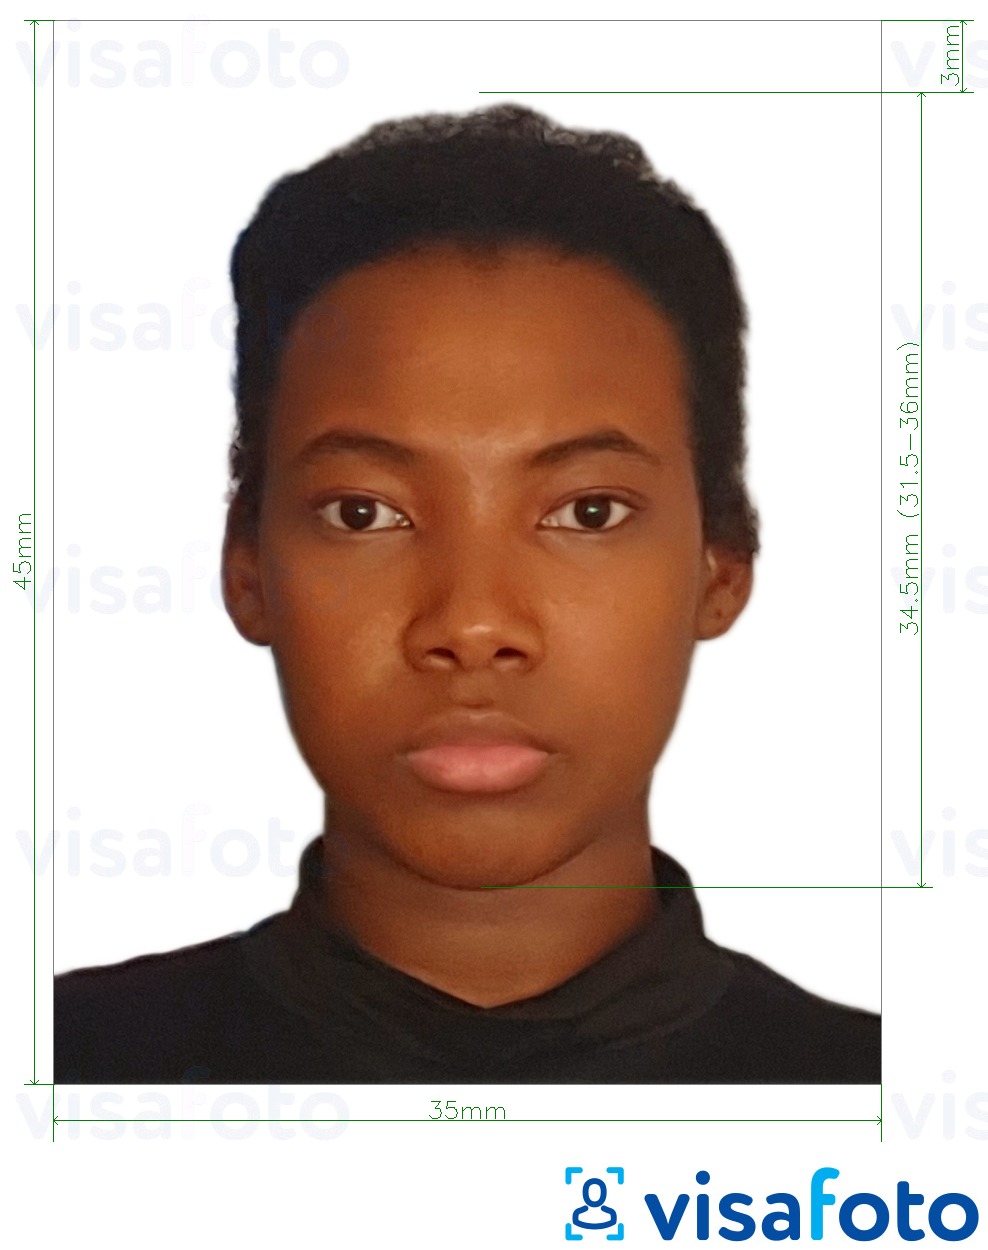  Benini viisa 3,5x4,5 cm (35x45 mm) fotonäidis koos täpse infoga mõõtude kohta.